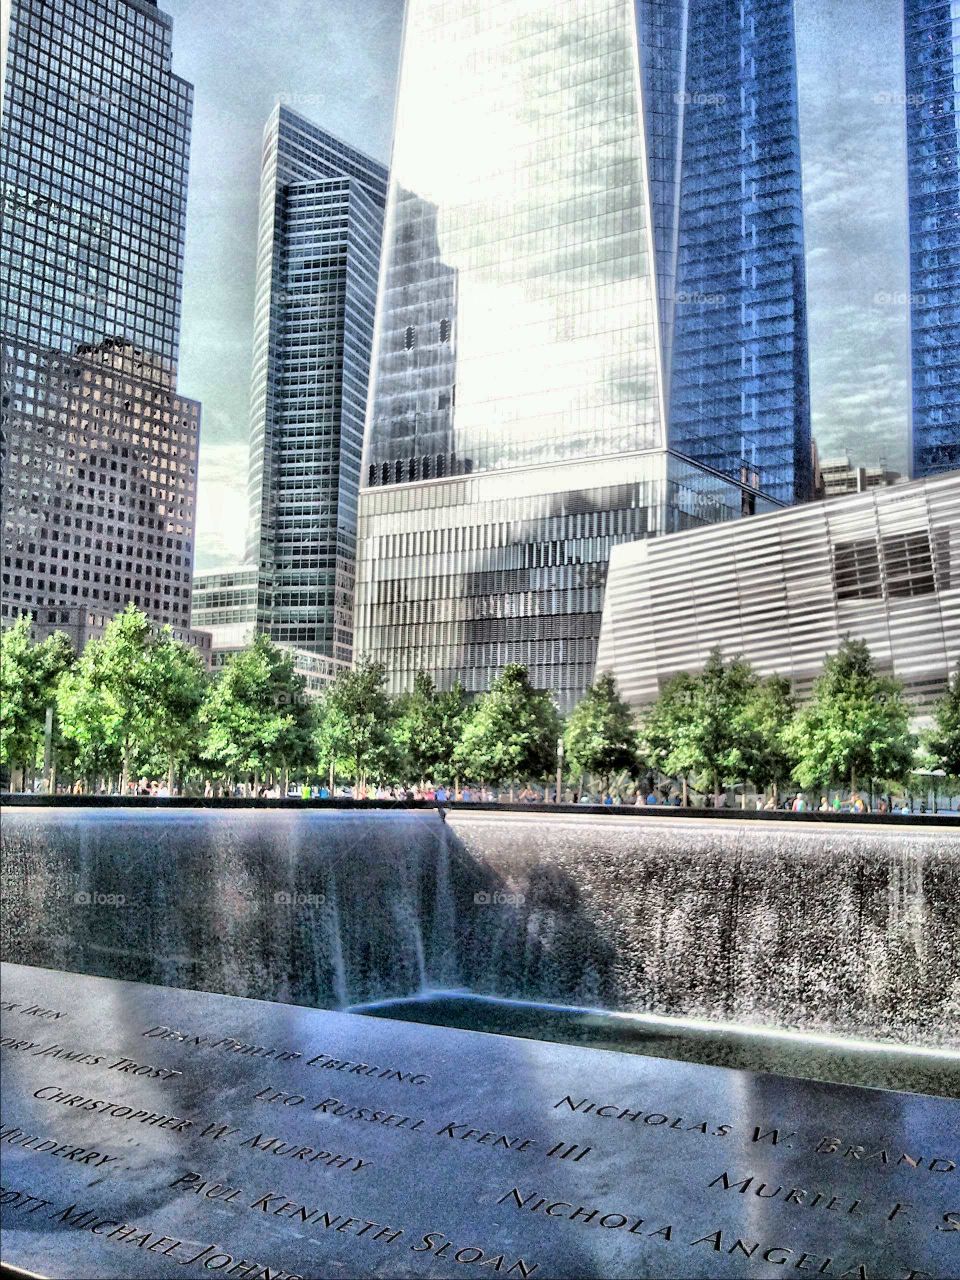 9/11 Memorial